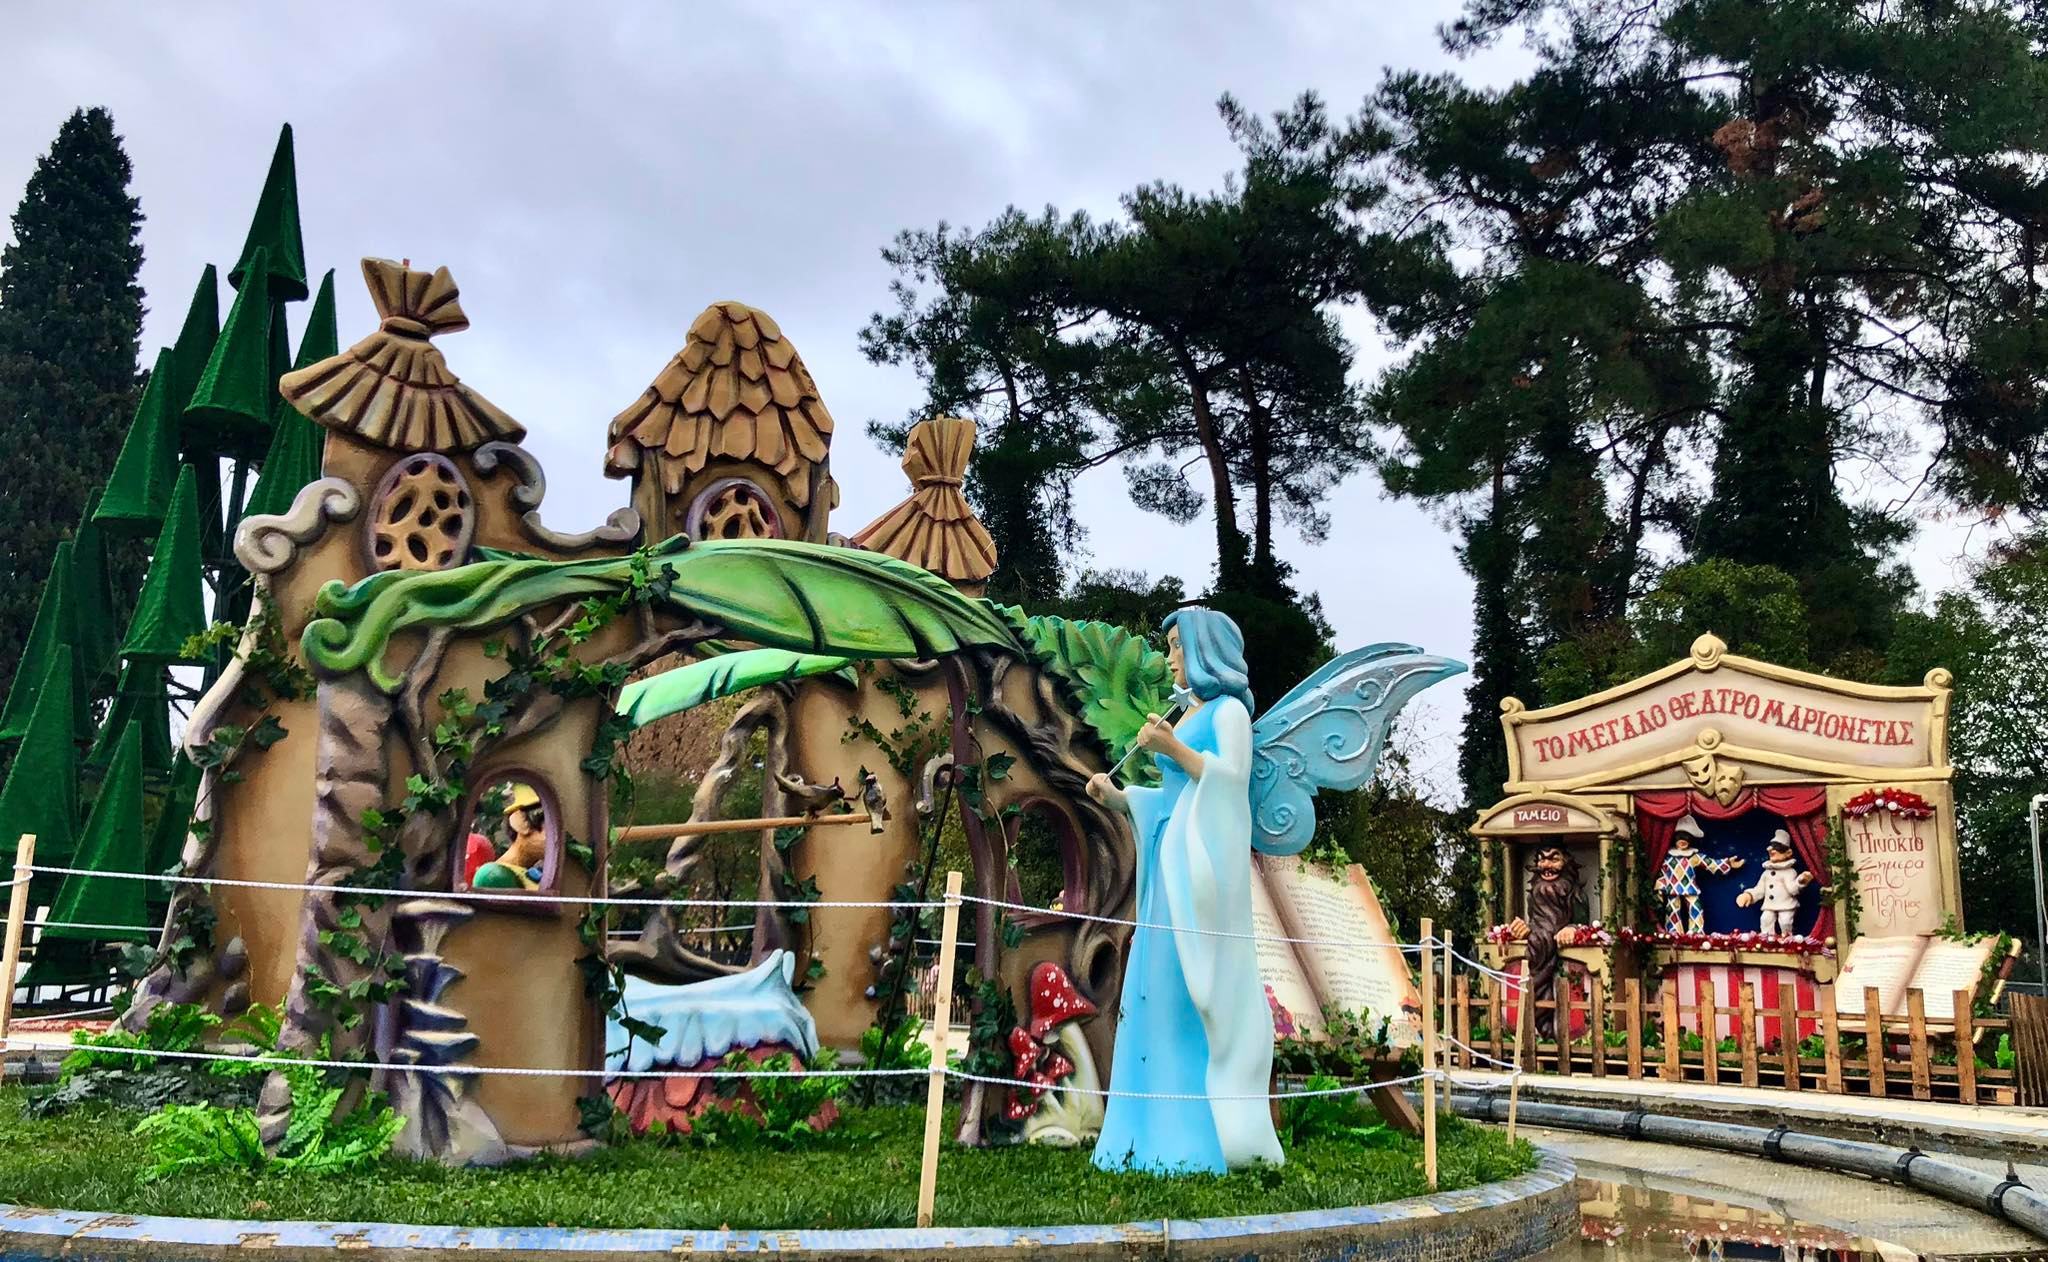 Θεματικό πάρκο για τον Πινόκιο στην Κομοτηνή για τα Χριστούγεννα